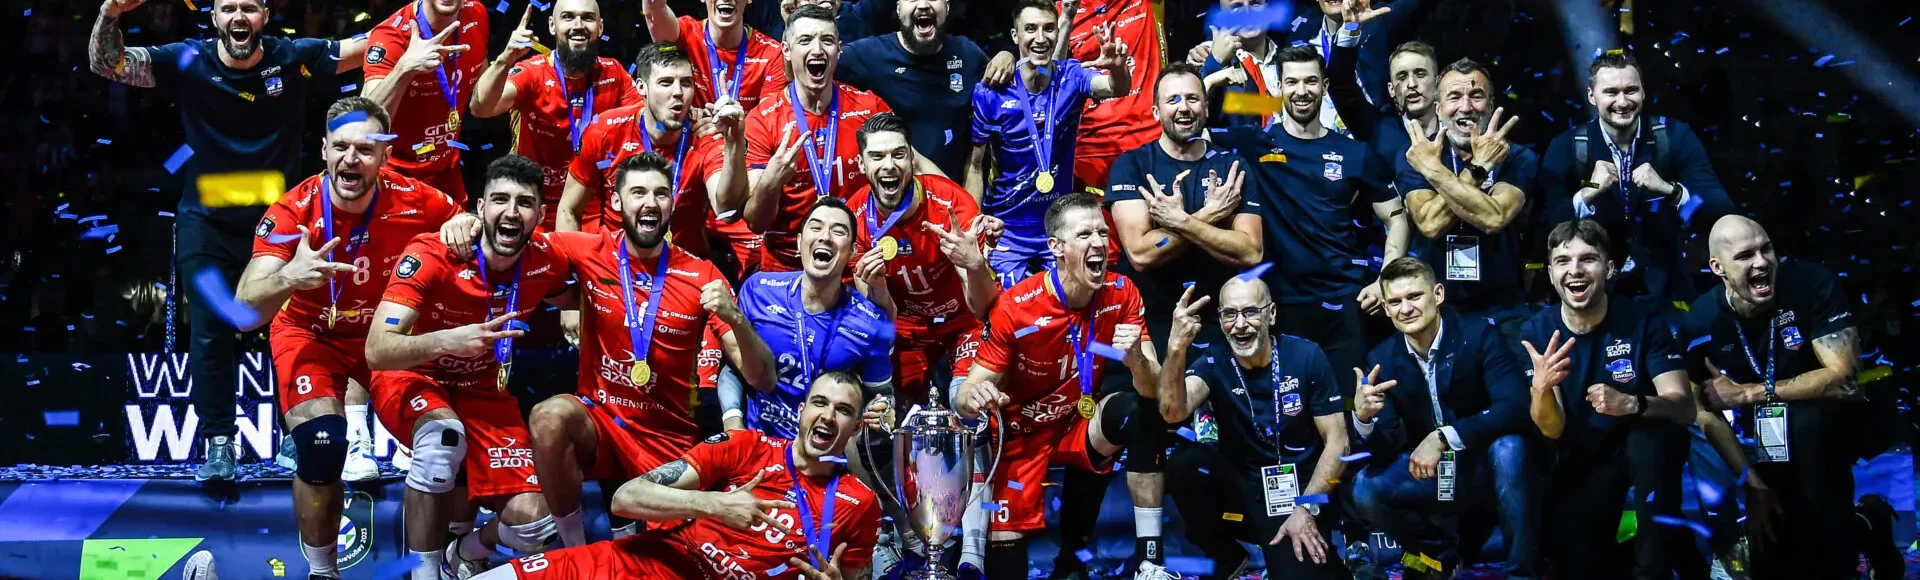 Grupa Azoty ZAKSA Kędzierzyn-Koźle obroniła tytuł najlepszej drużyny w Europie.